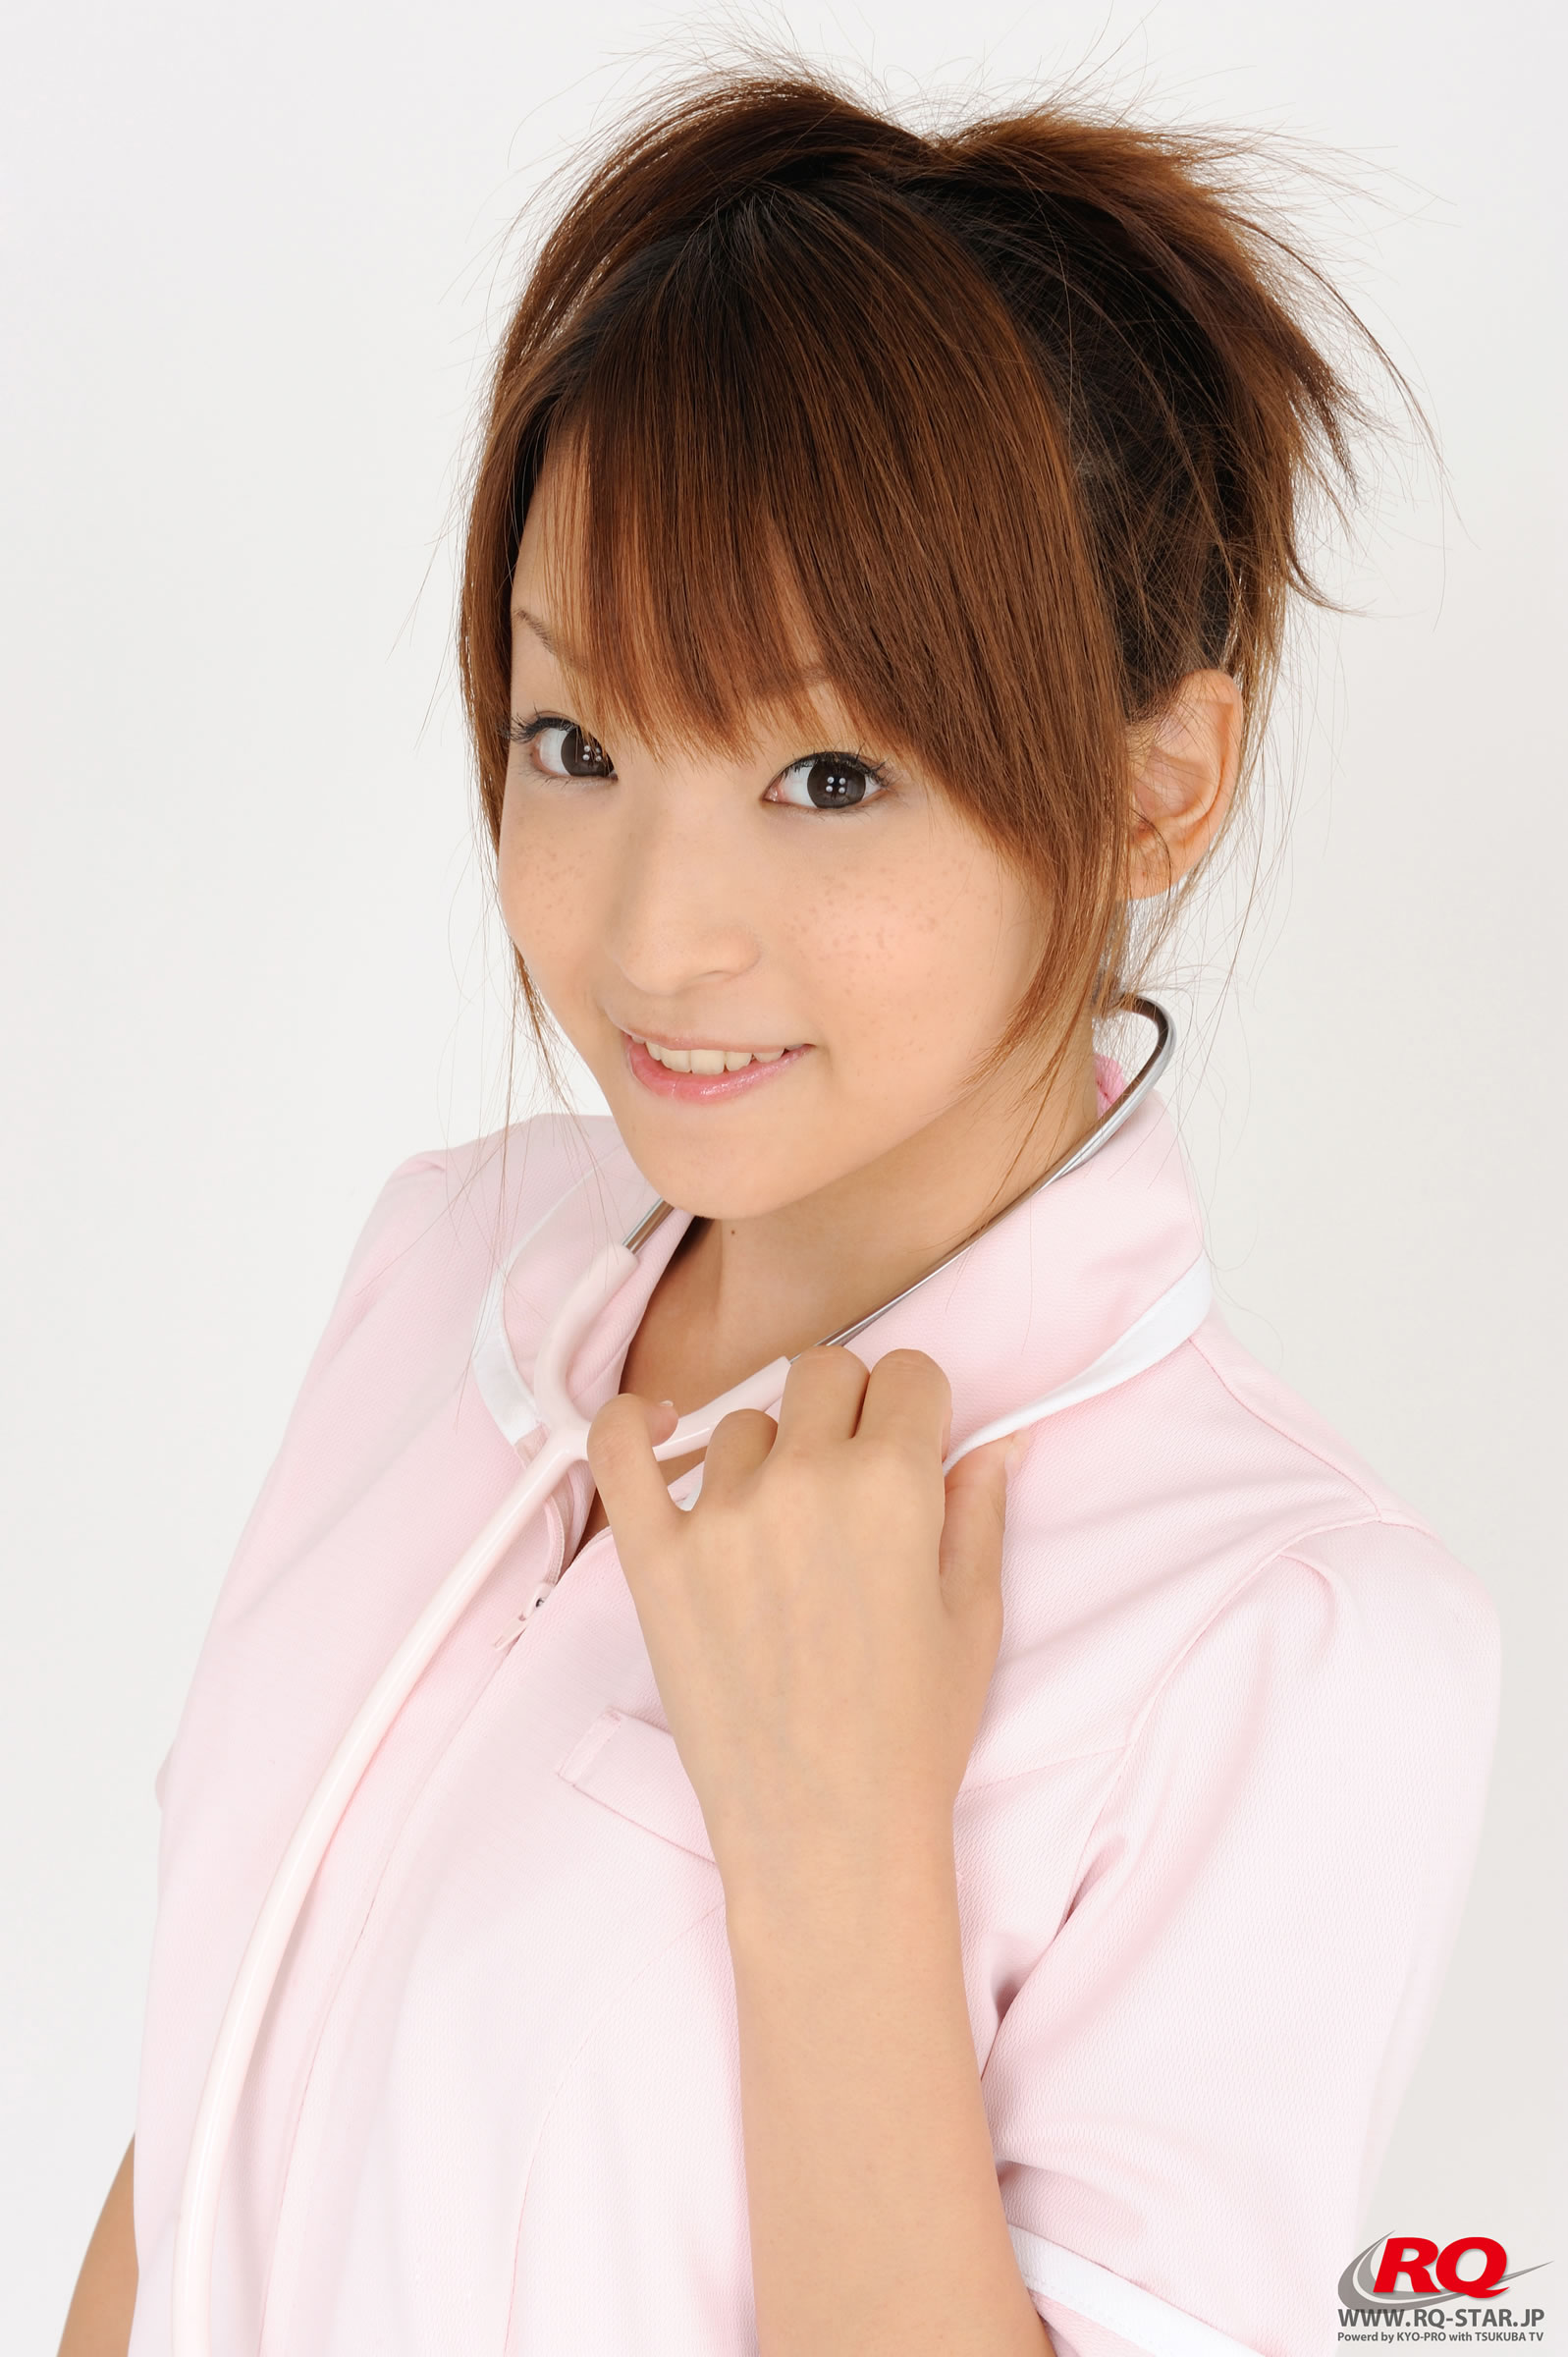 日本写真偶像青木未央清纯护士装套图